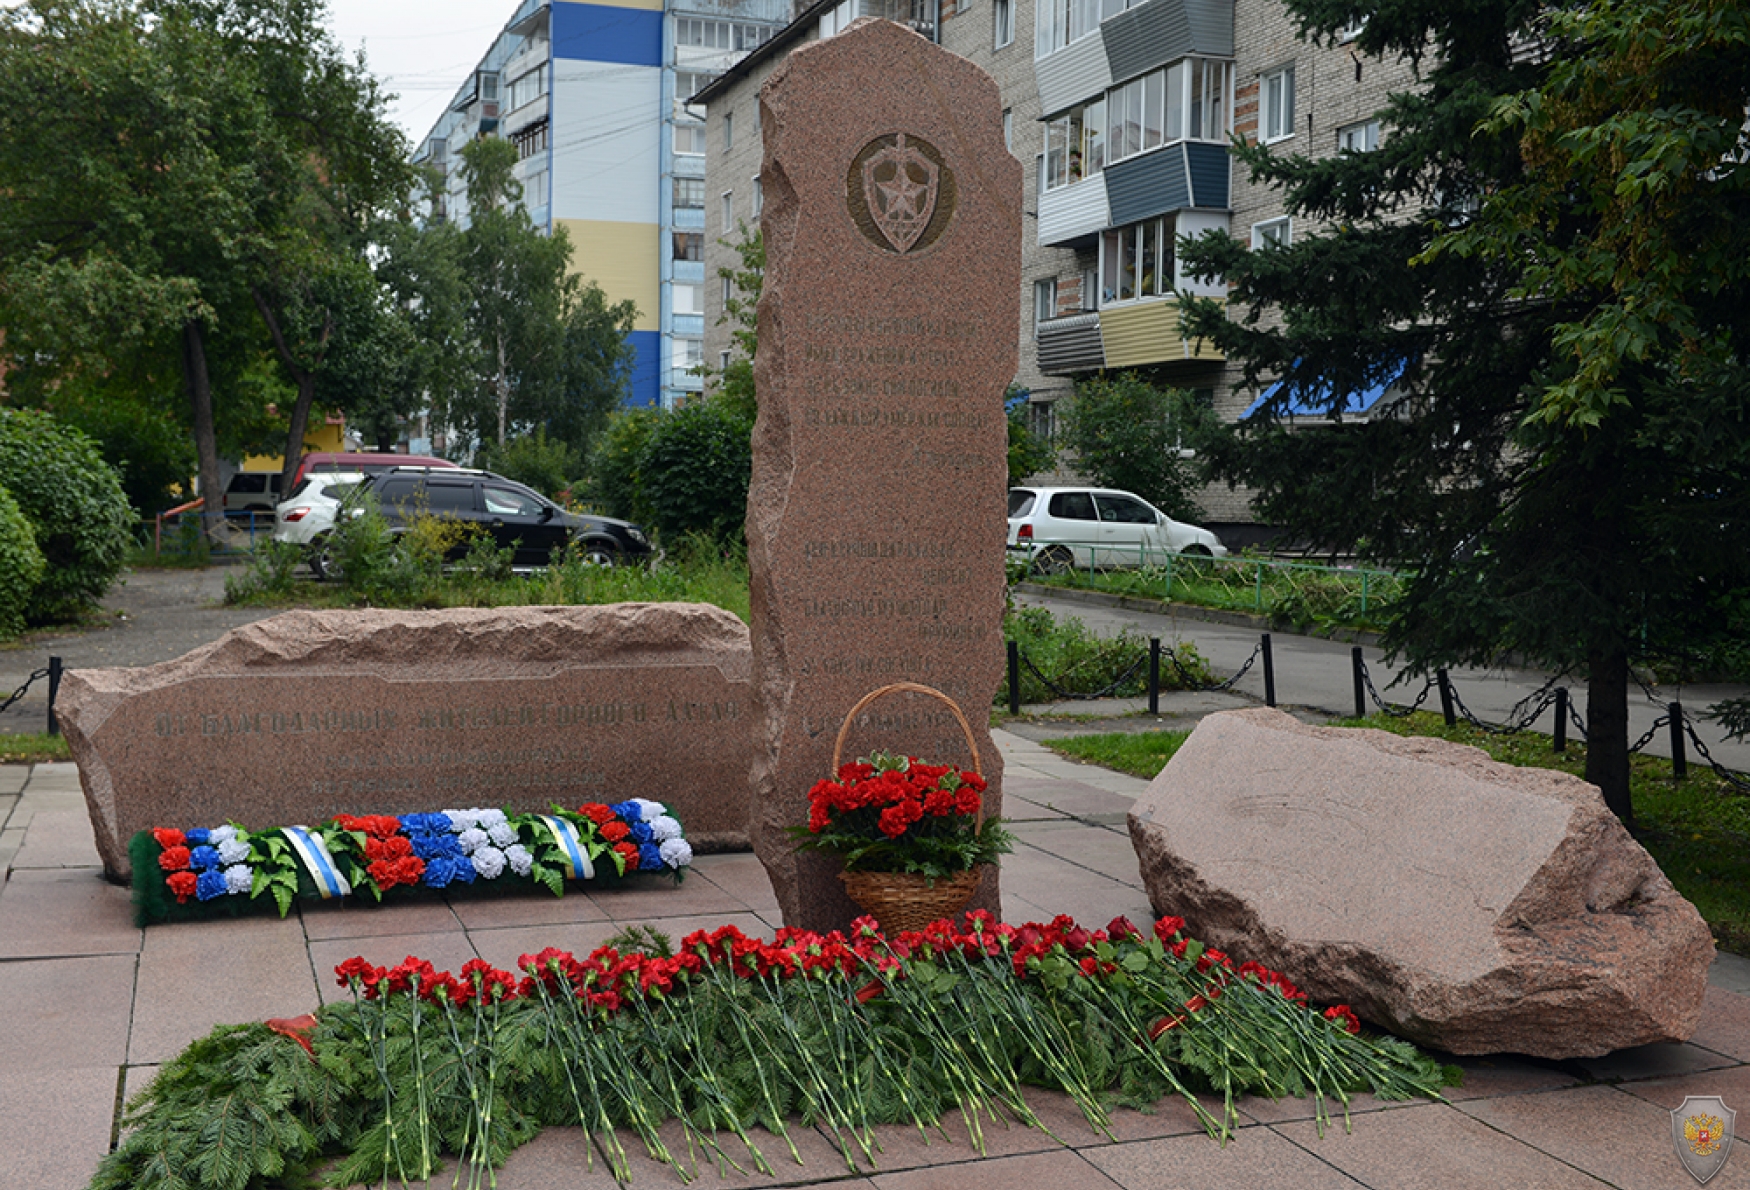 Возложение цветов к Мемориалу сотрудникам органов внутренних дел, погибшим при исполнении служебного долга.

